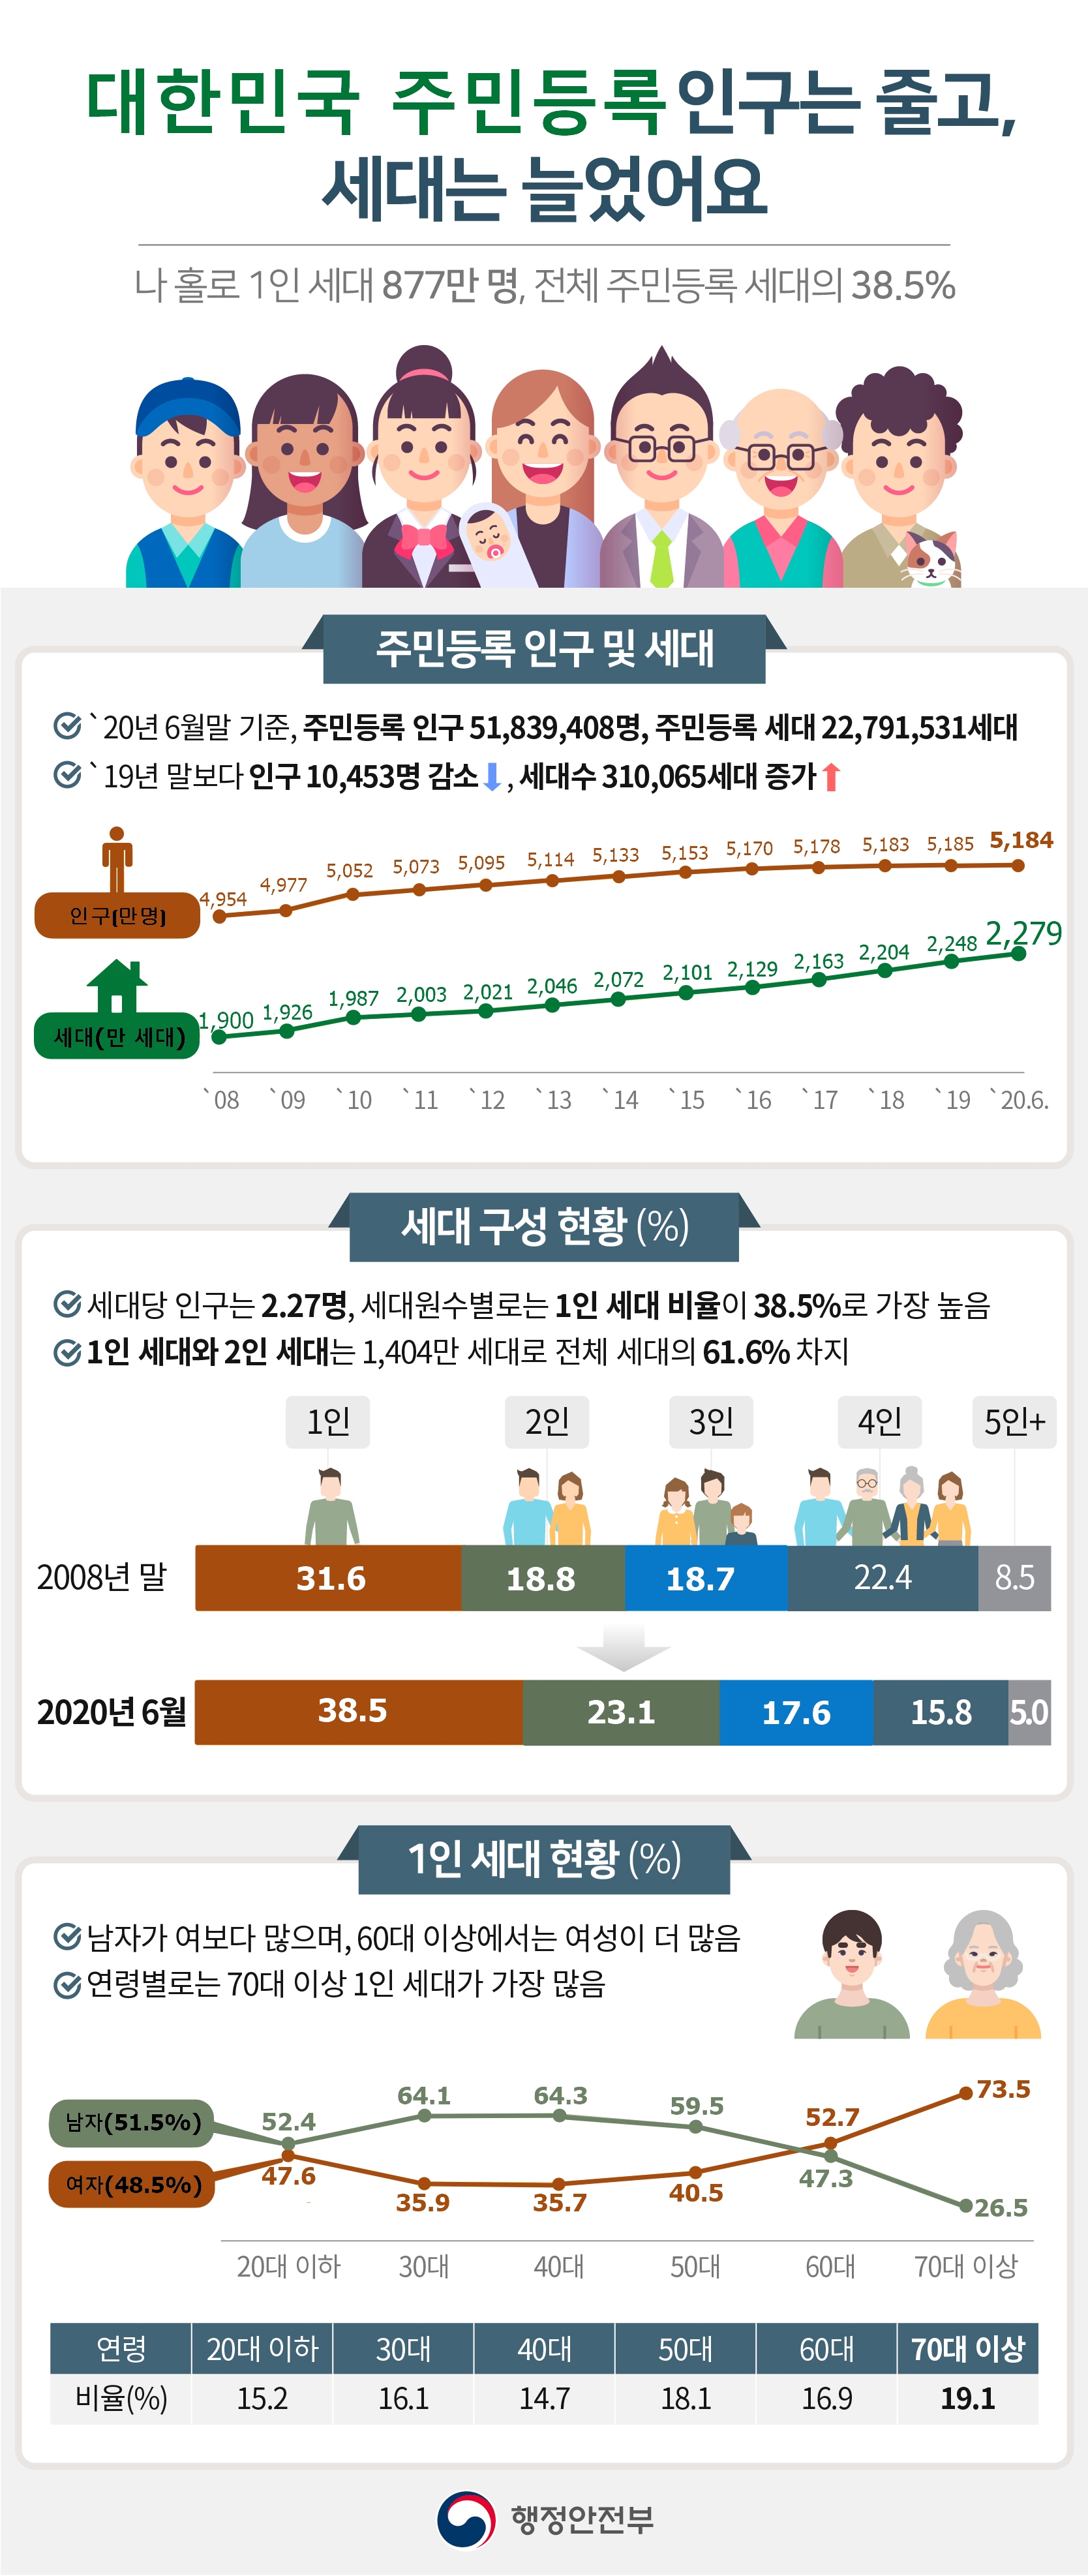 대한민국 주민등록 인구는 줄고, 세대는 늘었어요